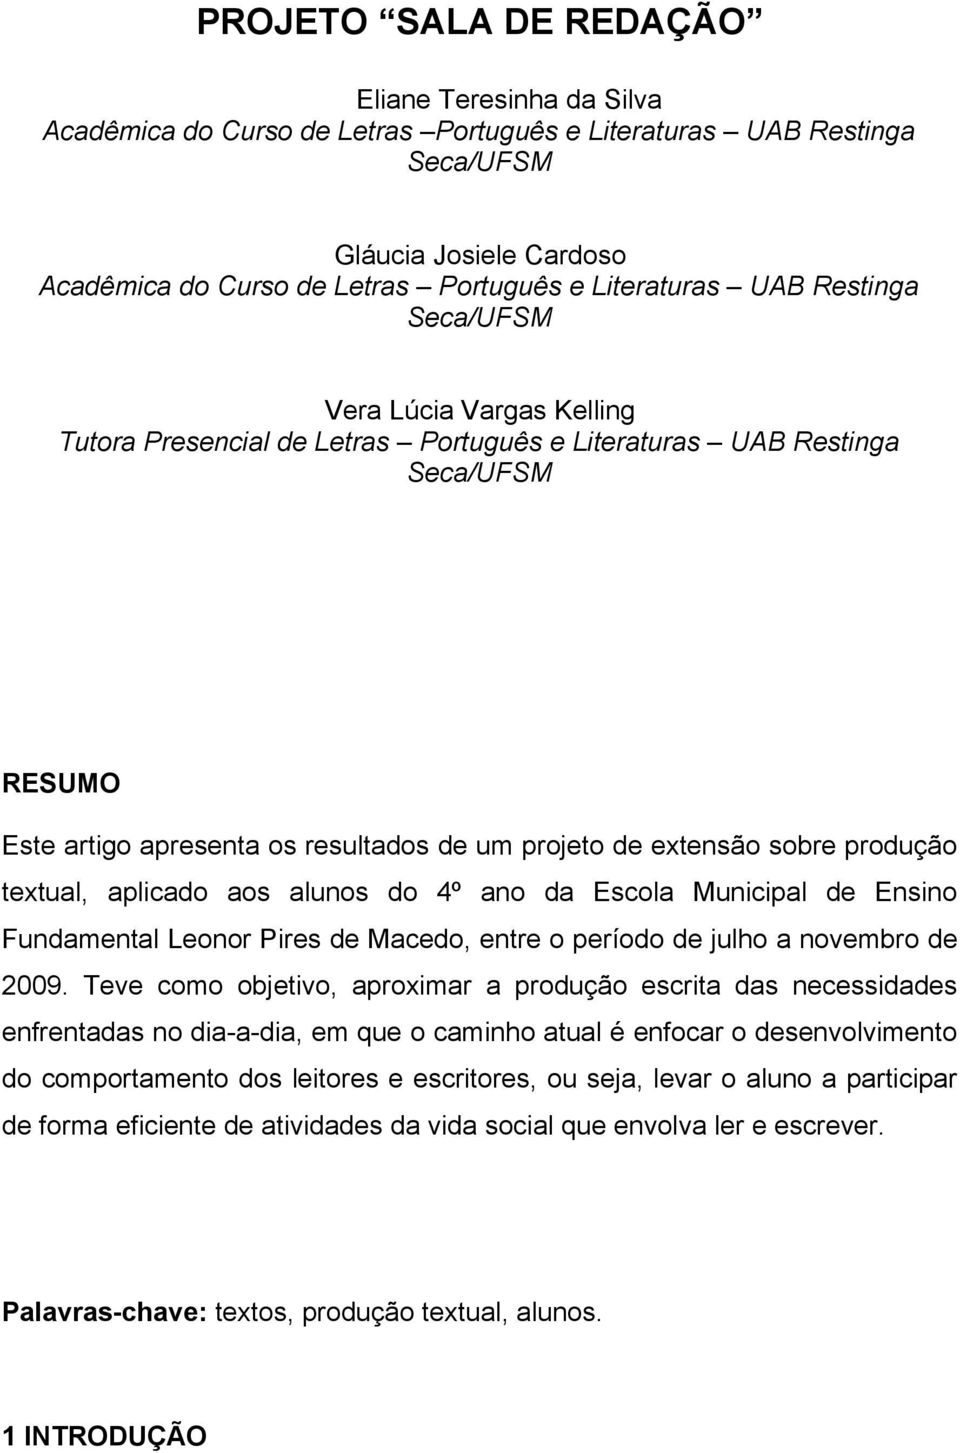 extensão sobre produção textual, aplicado aos alunos do 4º ano da Escola Municipal de Ensino Fundamental Leonor Pires de Macedo, entre o período de julho a novembro de 2009.